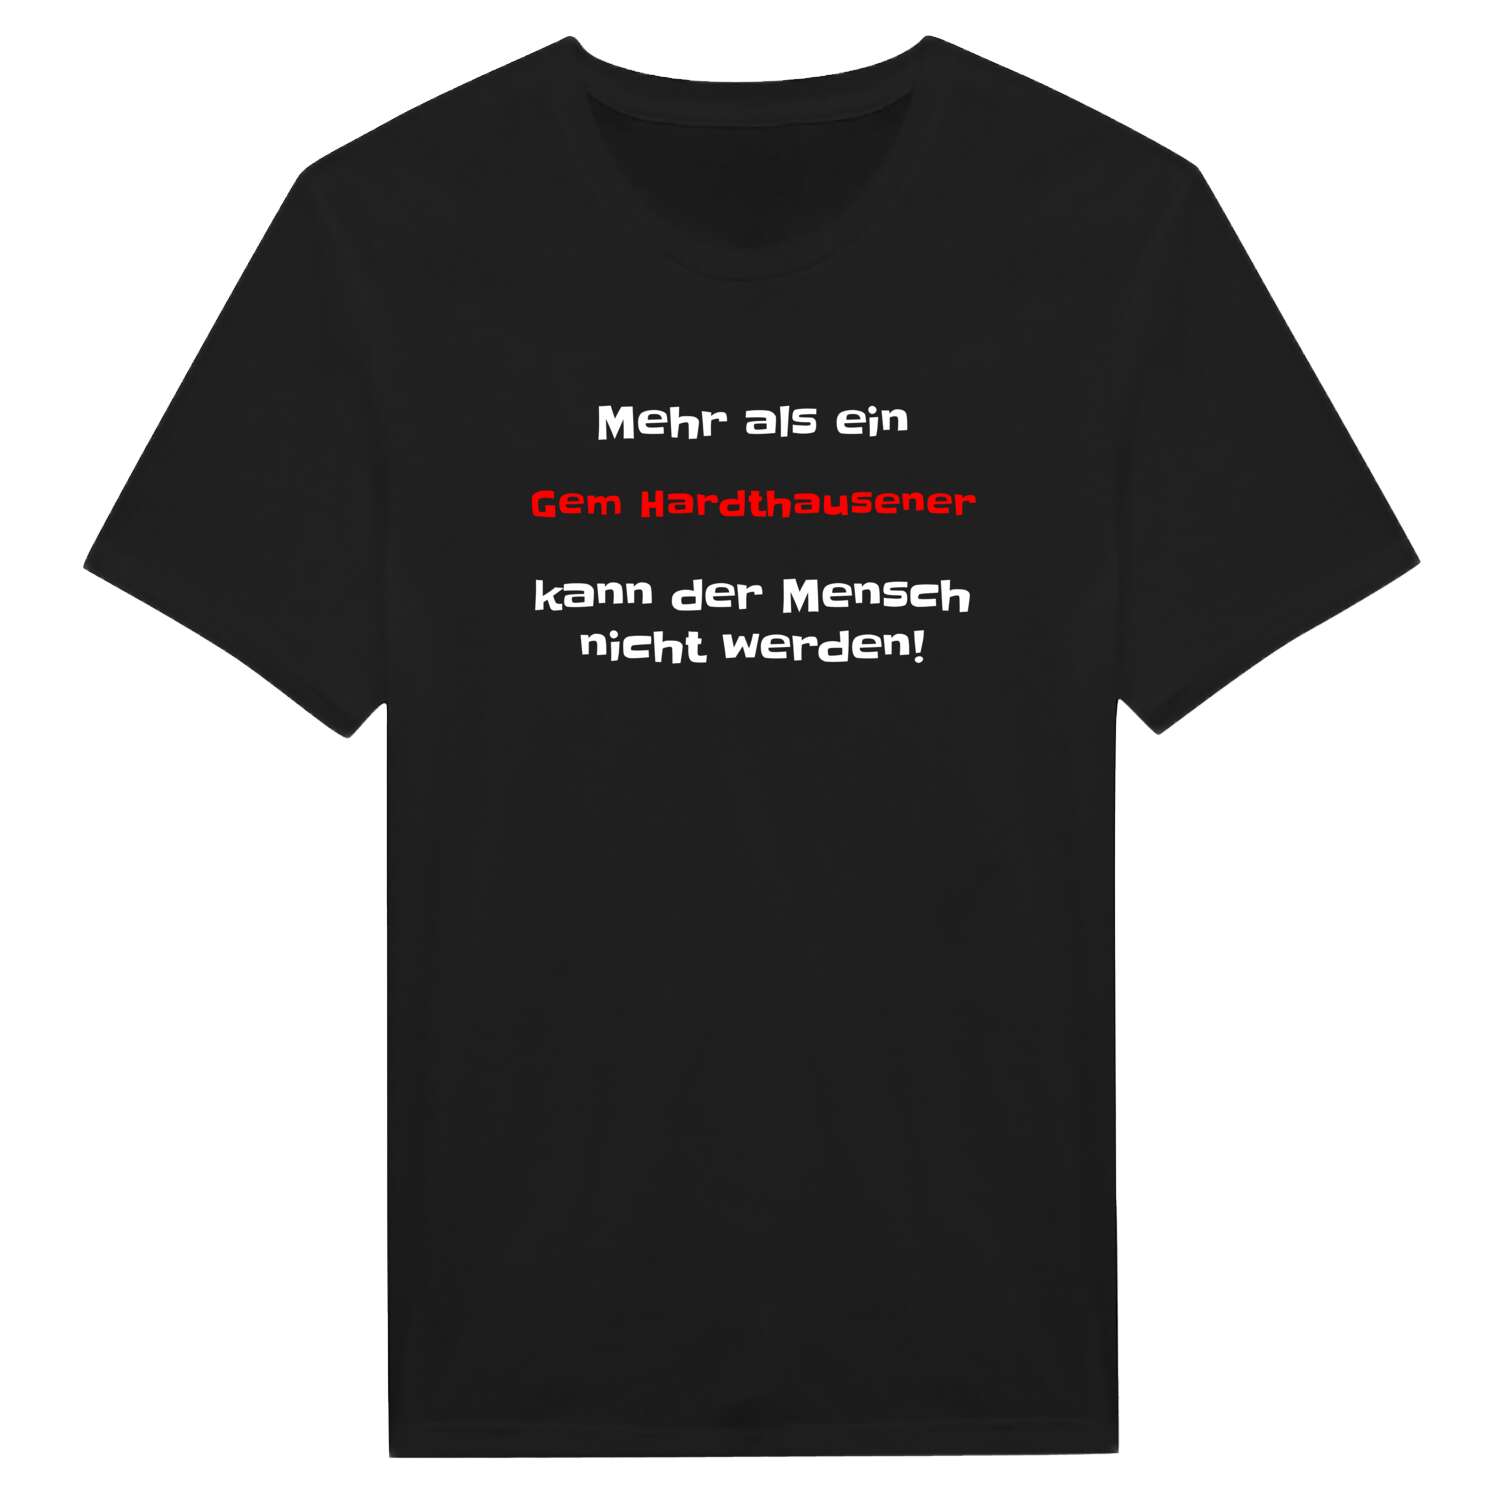 Gem Hardthausen T-Shirt »Mehr als ein«